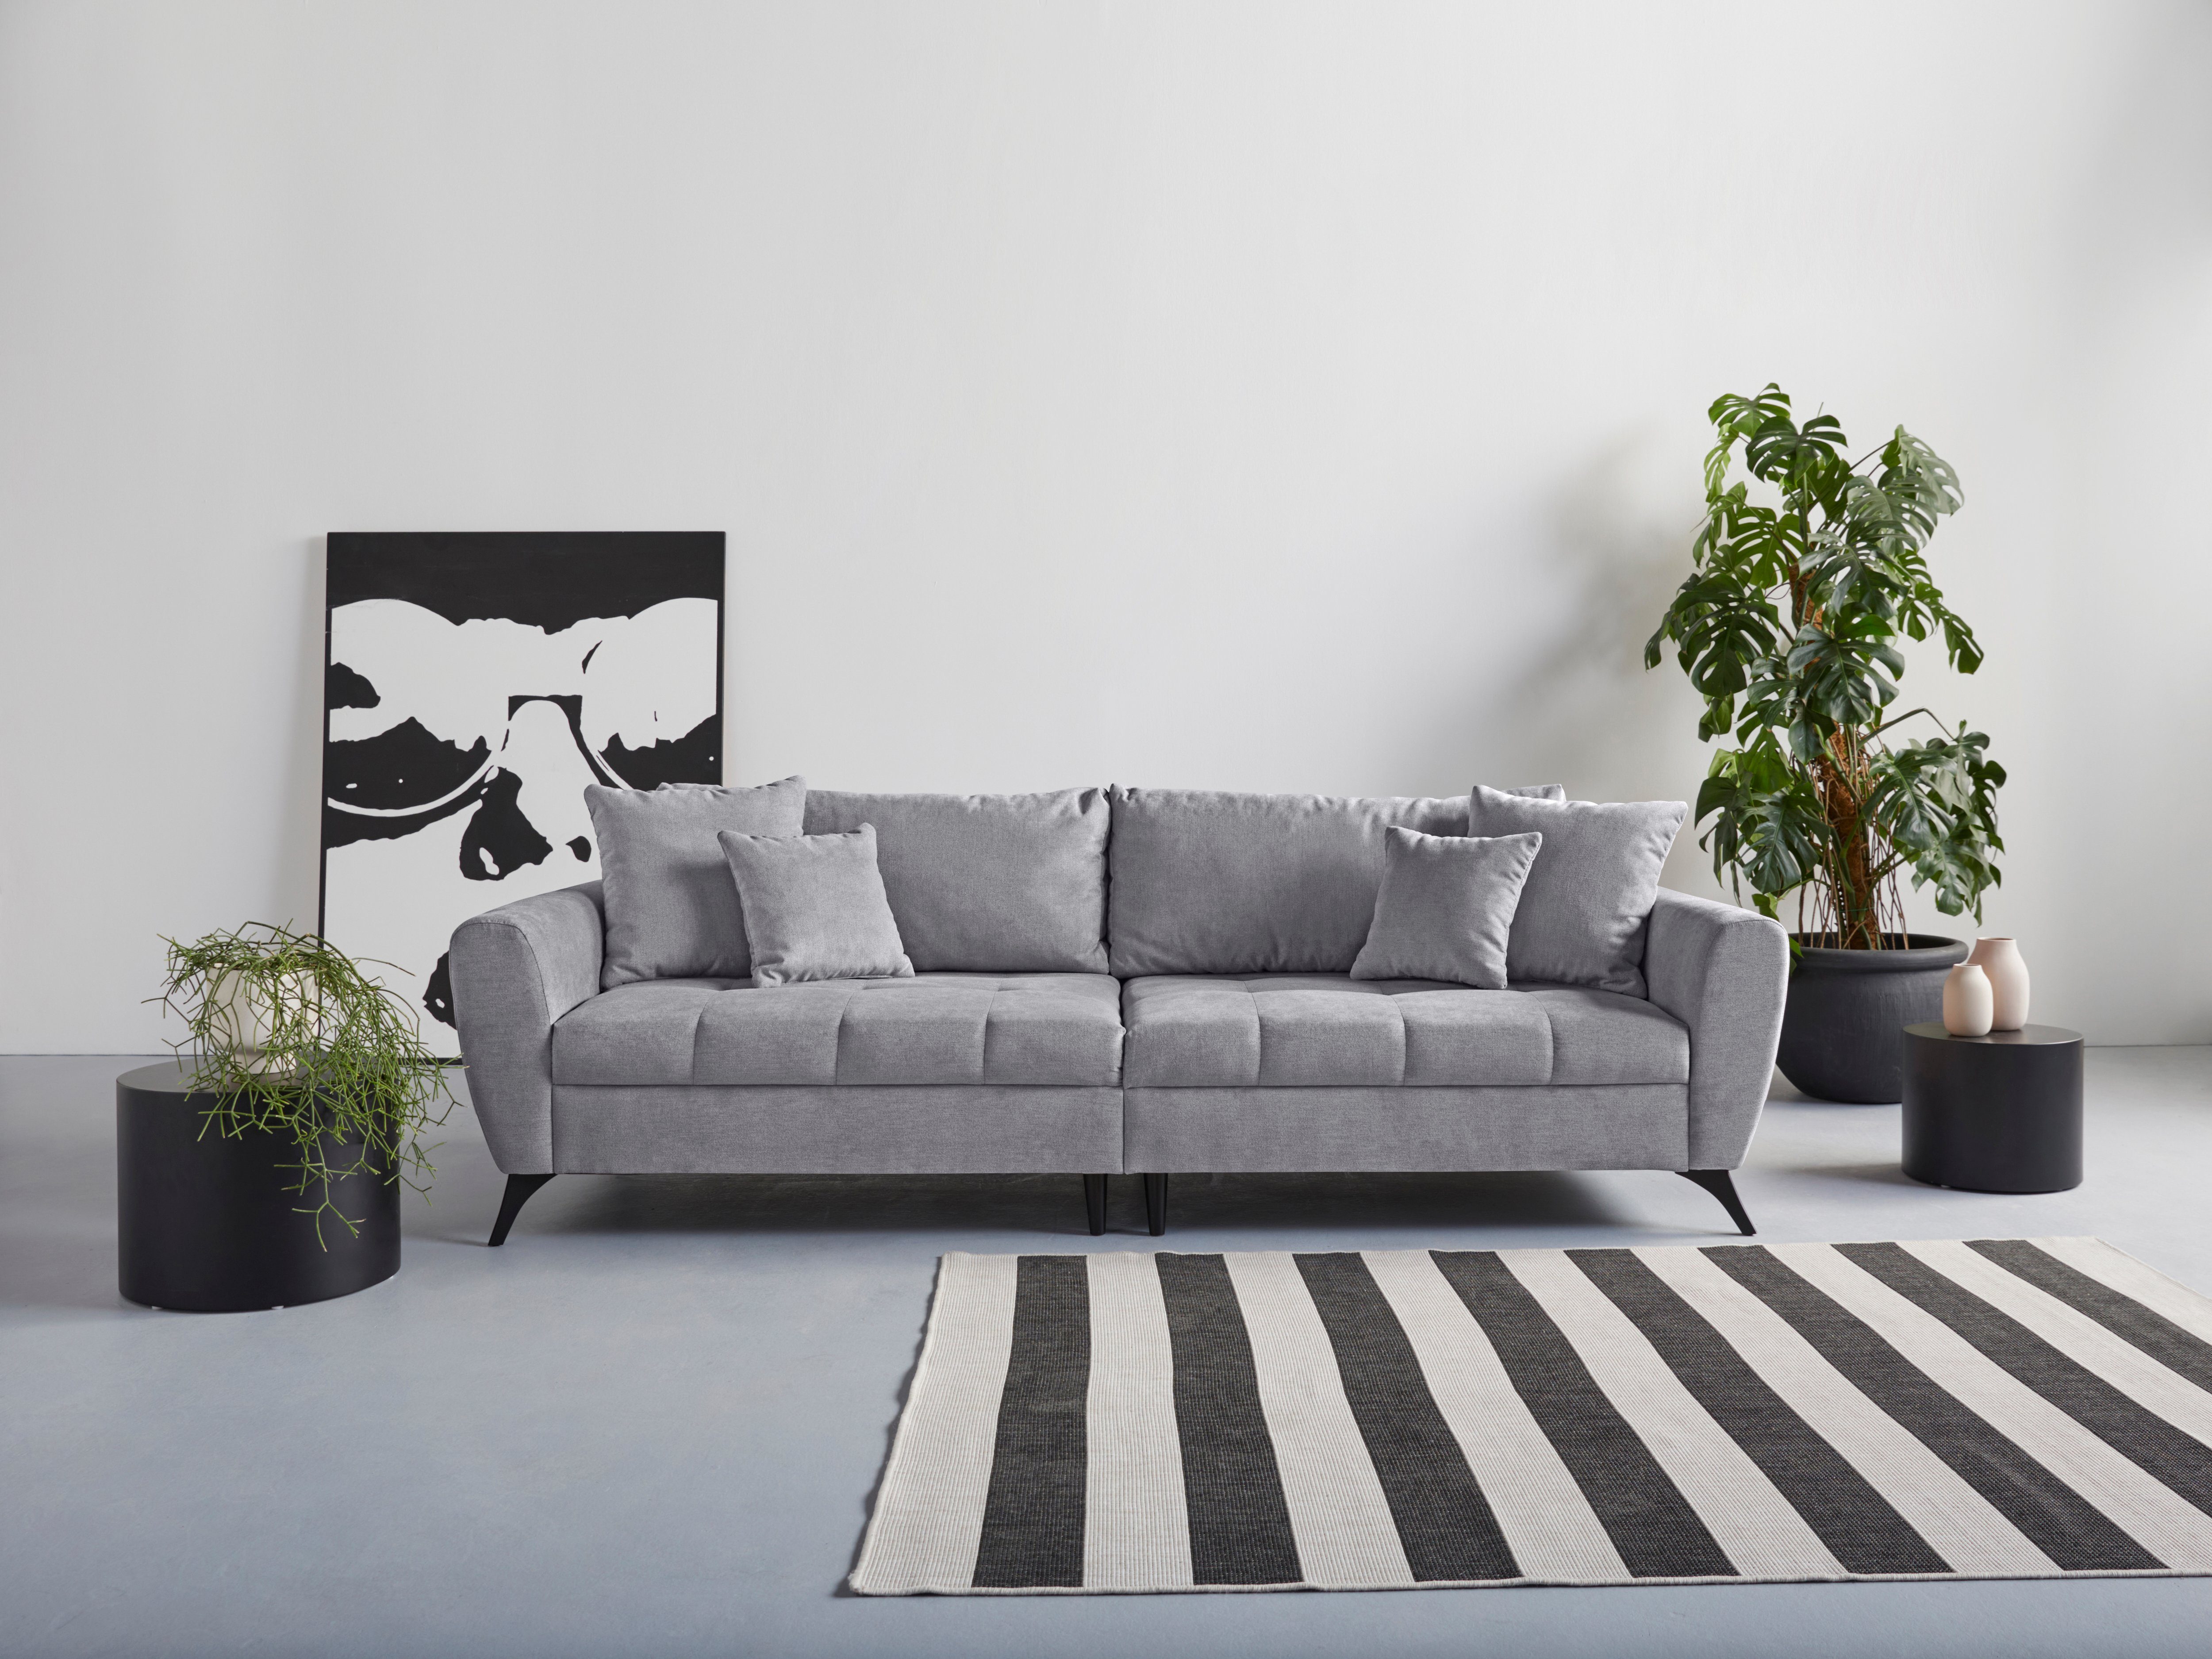 INOSIGN Big-Sofa clean-Bezug pro 140kg Lörby, bis mit Sitzplatz, auch Belastbarkeit Aqua